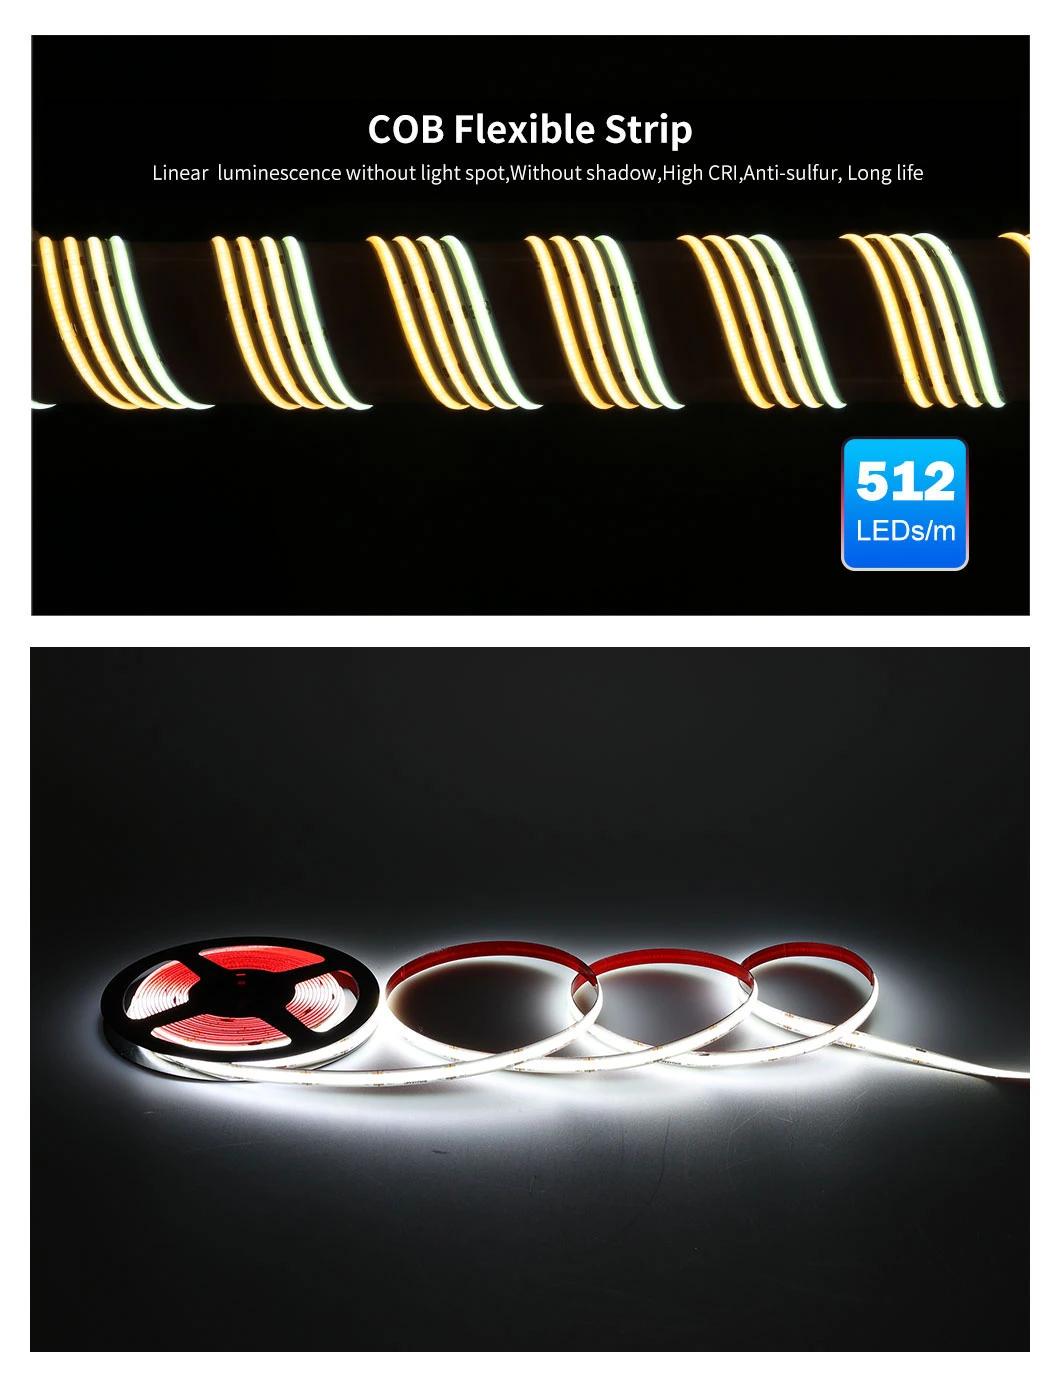 Utra Thin 24V Flexible Rope Light Cuttable 12W 512LED/M LED COB Strip Tape Flexible Ribbon Light